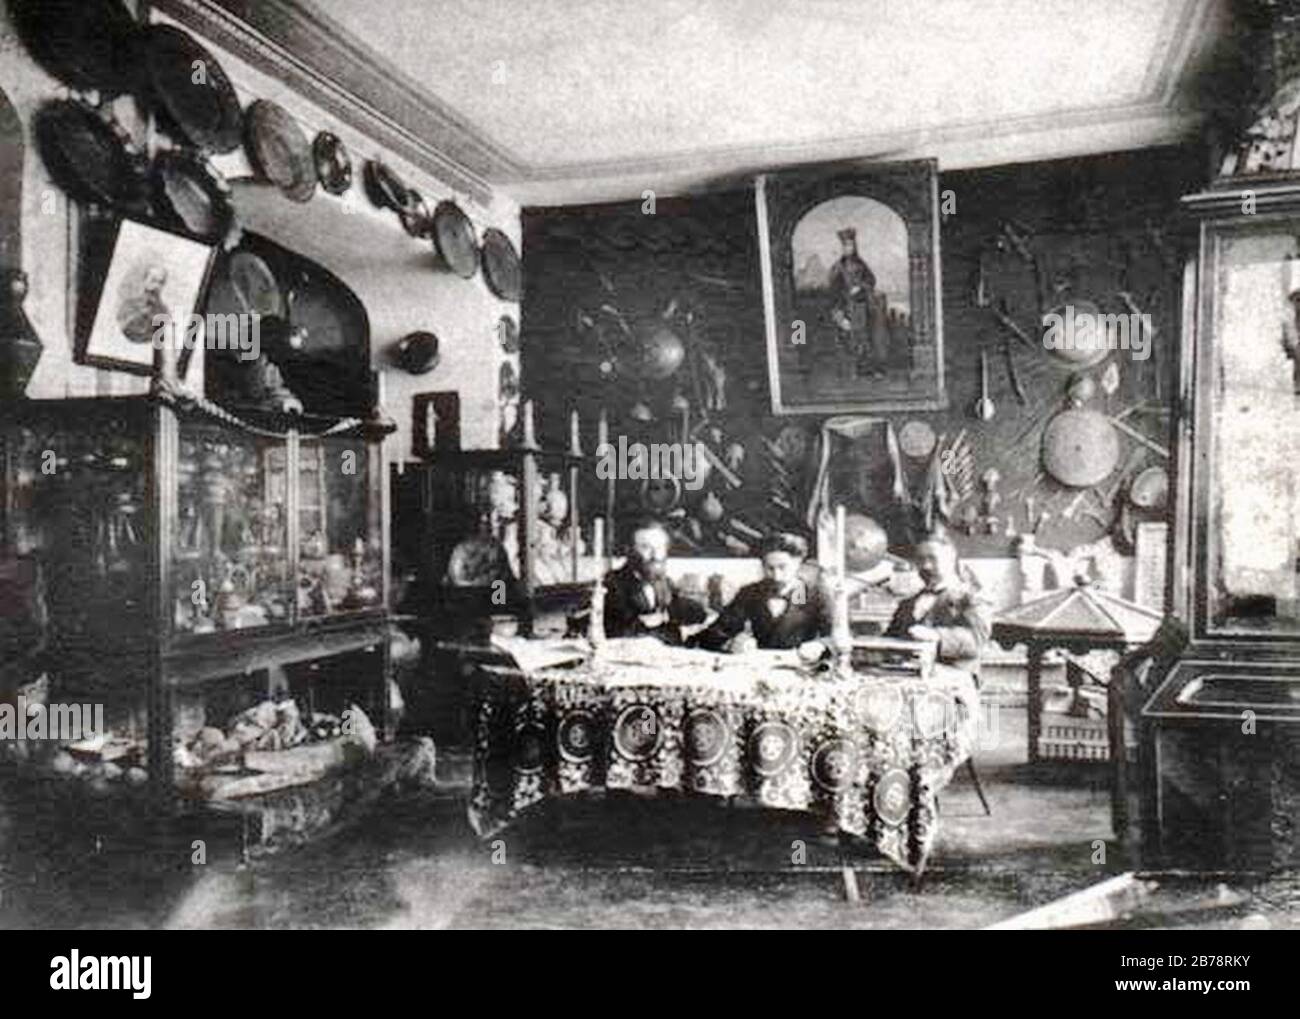 Georgian Society for Literacy Museum (Roinashvili). Stock Photo